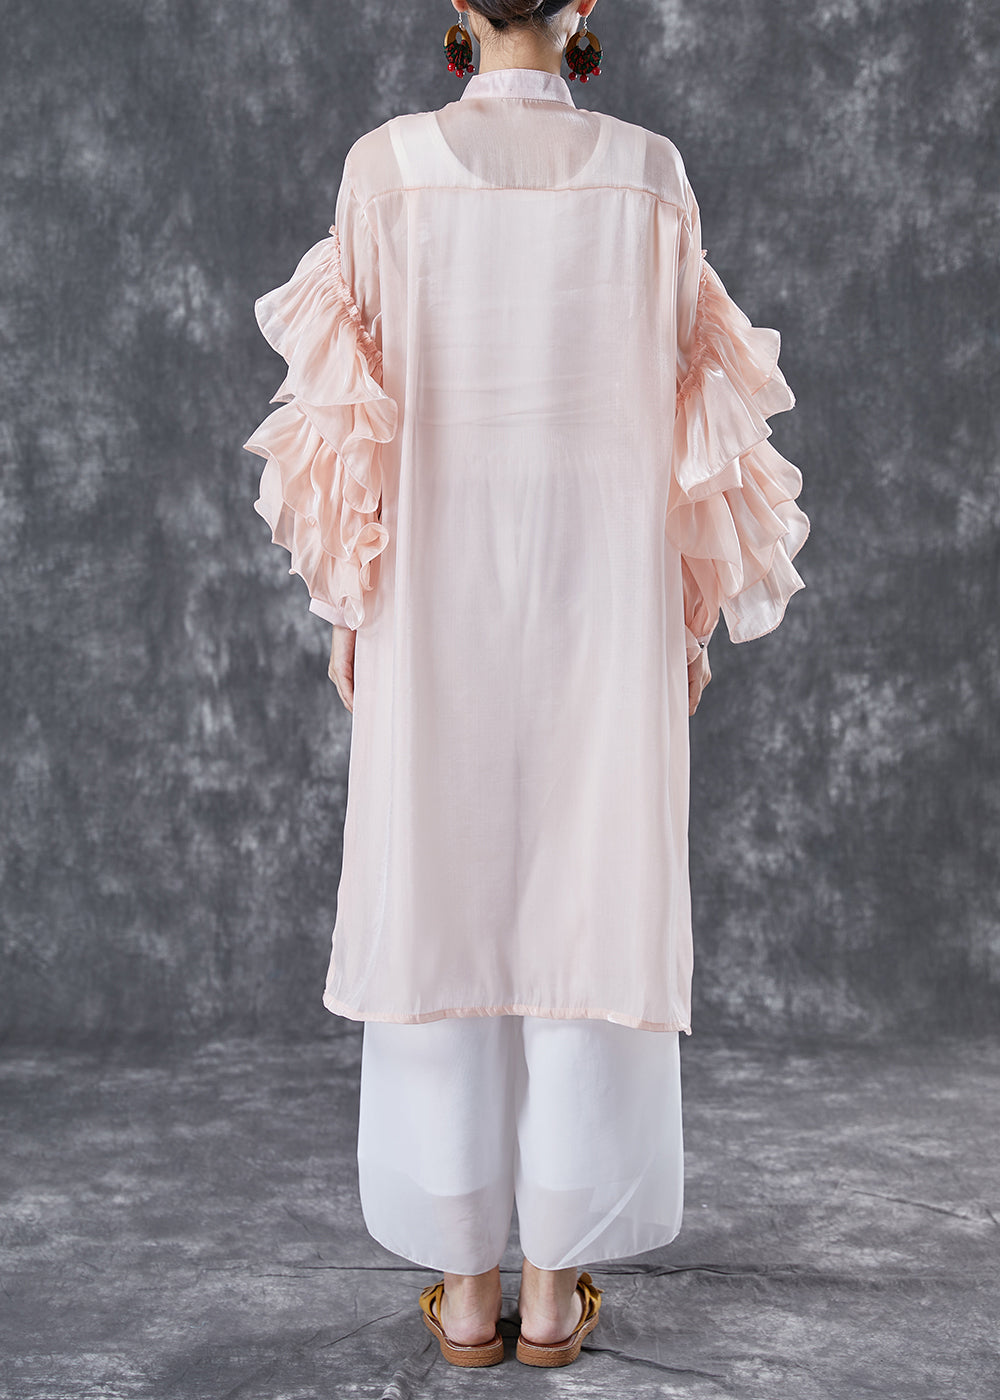 Pink Chiffon UPF 50+ Long Shirt Stand Collar Oversized Petal Sleeve TA1063